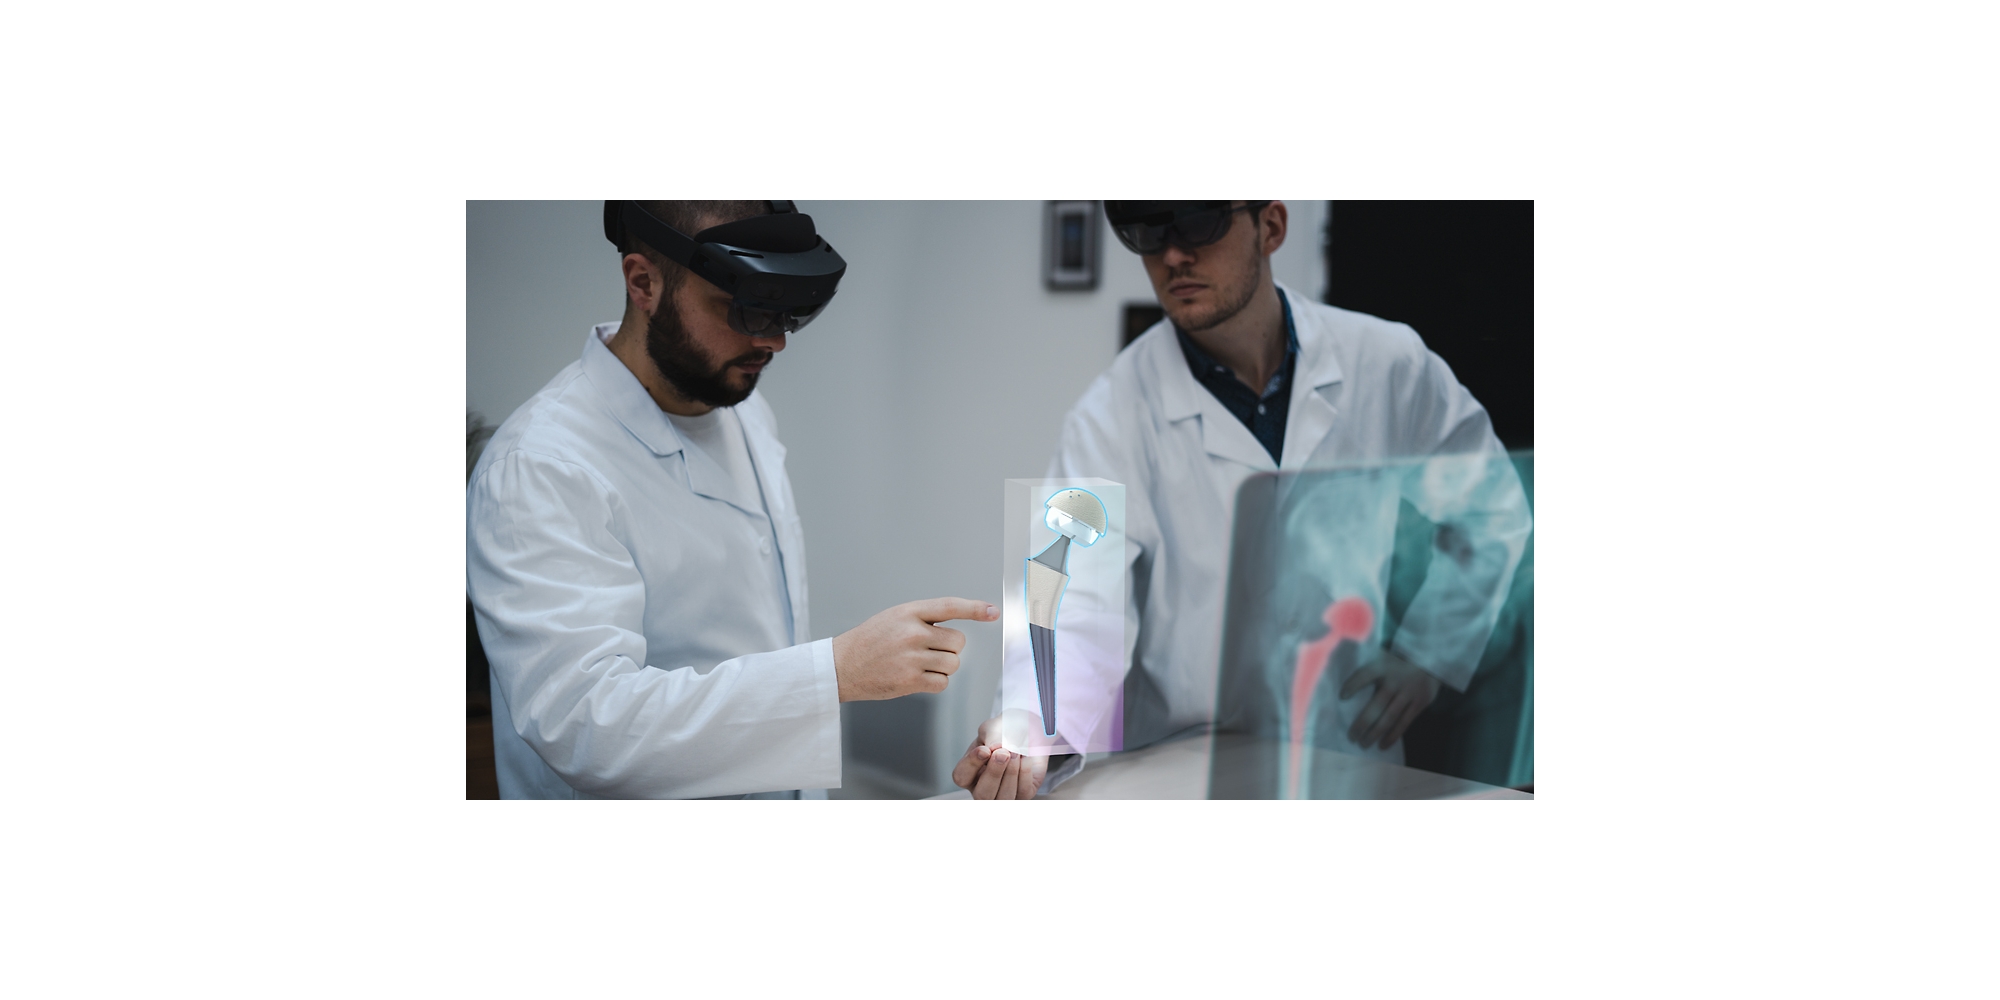 Kaksi terveydenhuollon ammattilaista, jotka käyttävät HoloLens 2 -laitteita tarkastellakseen röntgenkuvaa yhdistetyssä todellisuudessa.